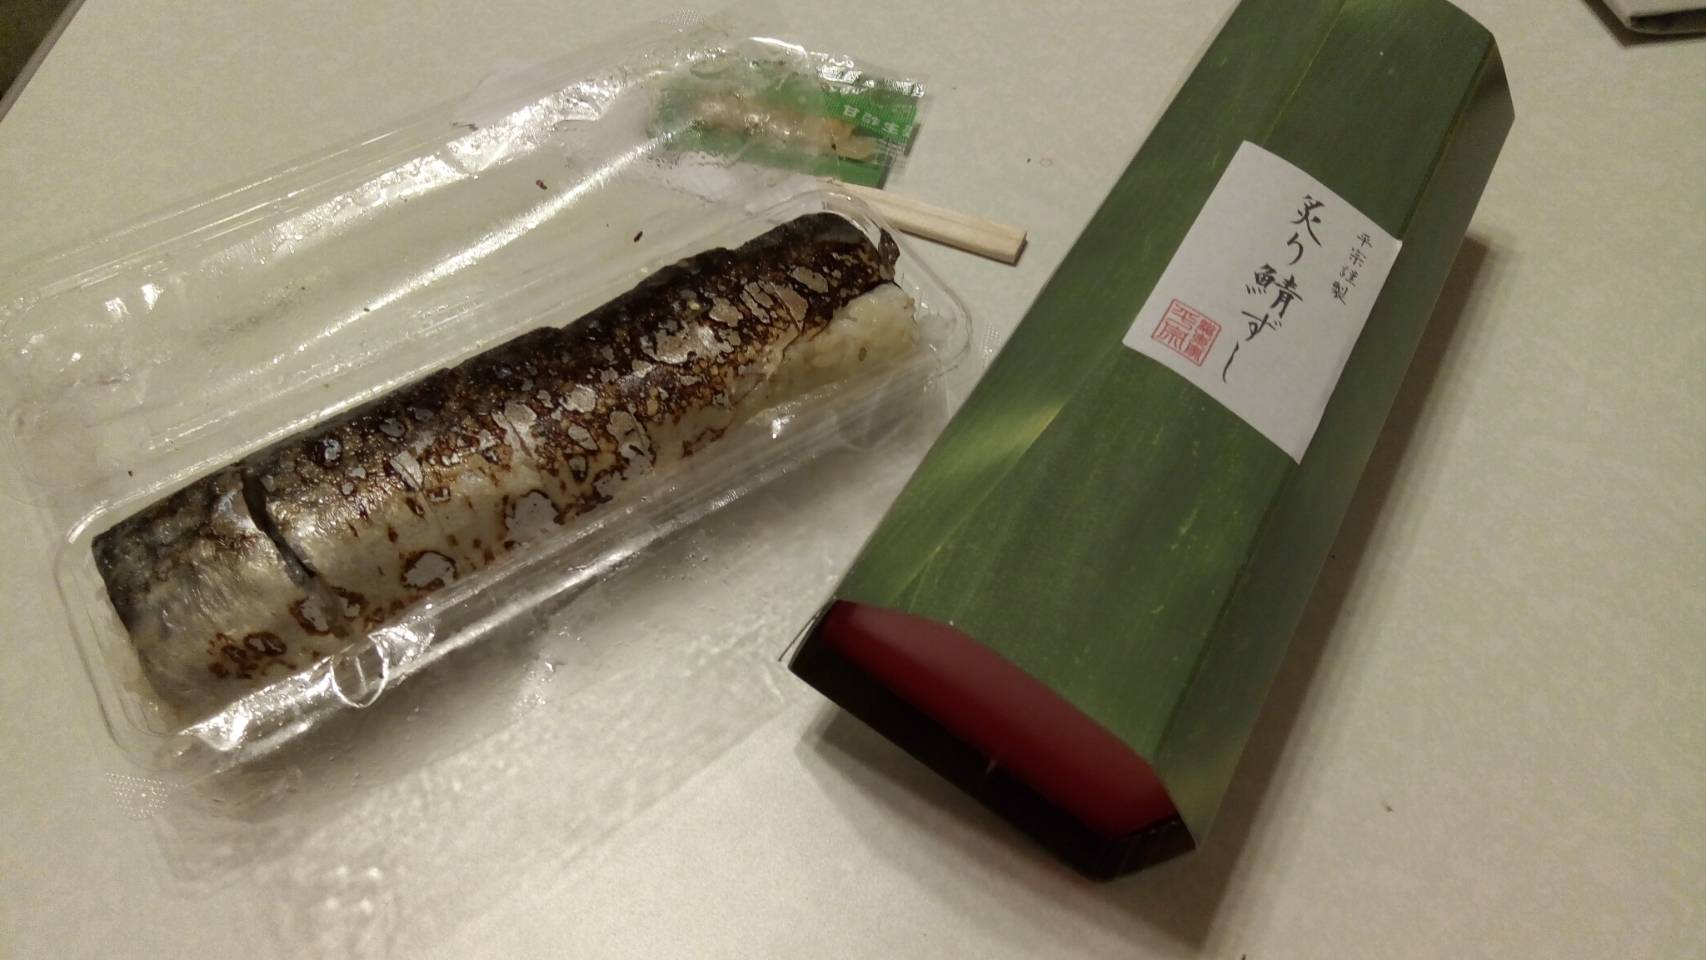 奈良のオススメお土産！柿の葉寿司で有名な【平宗】の「炙り鯖寿司」が絶品 | 日本のおみやげ~japanese souvenir~